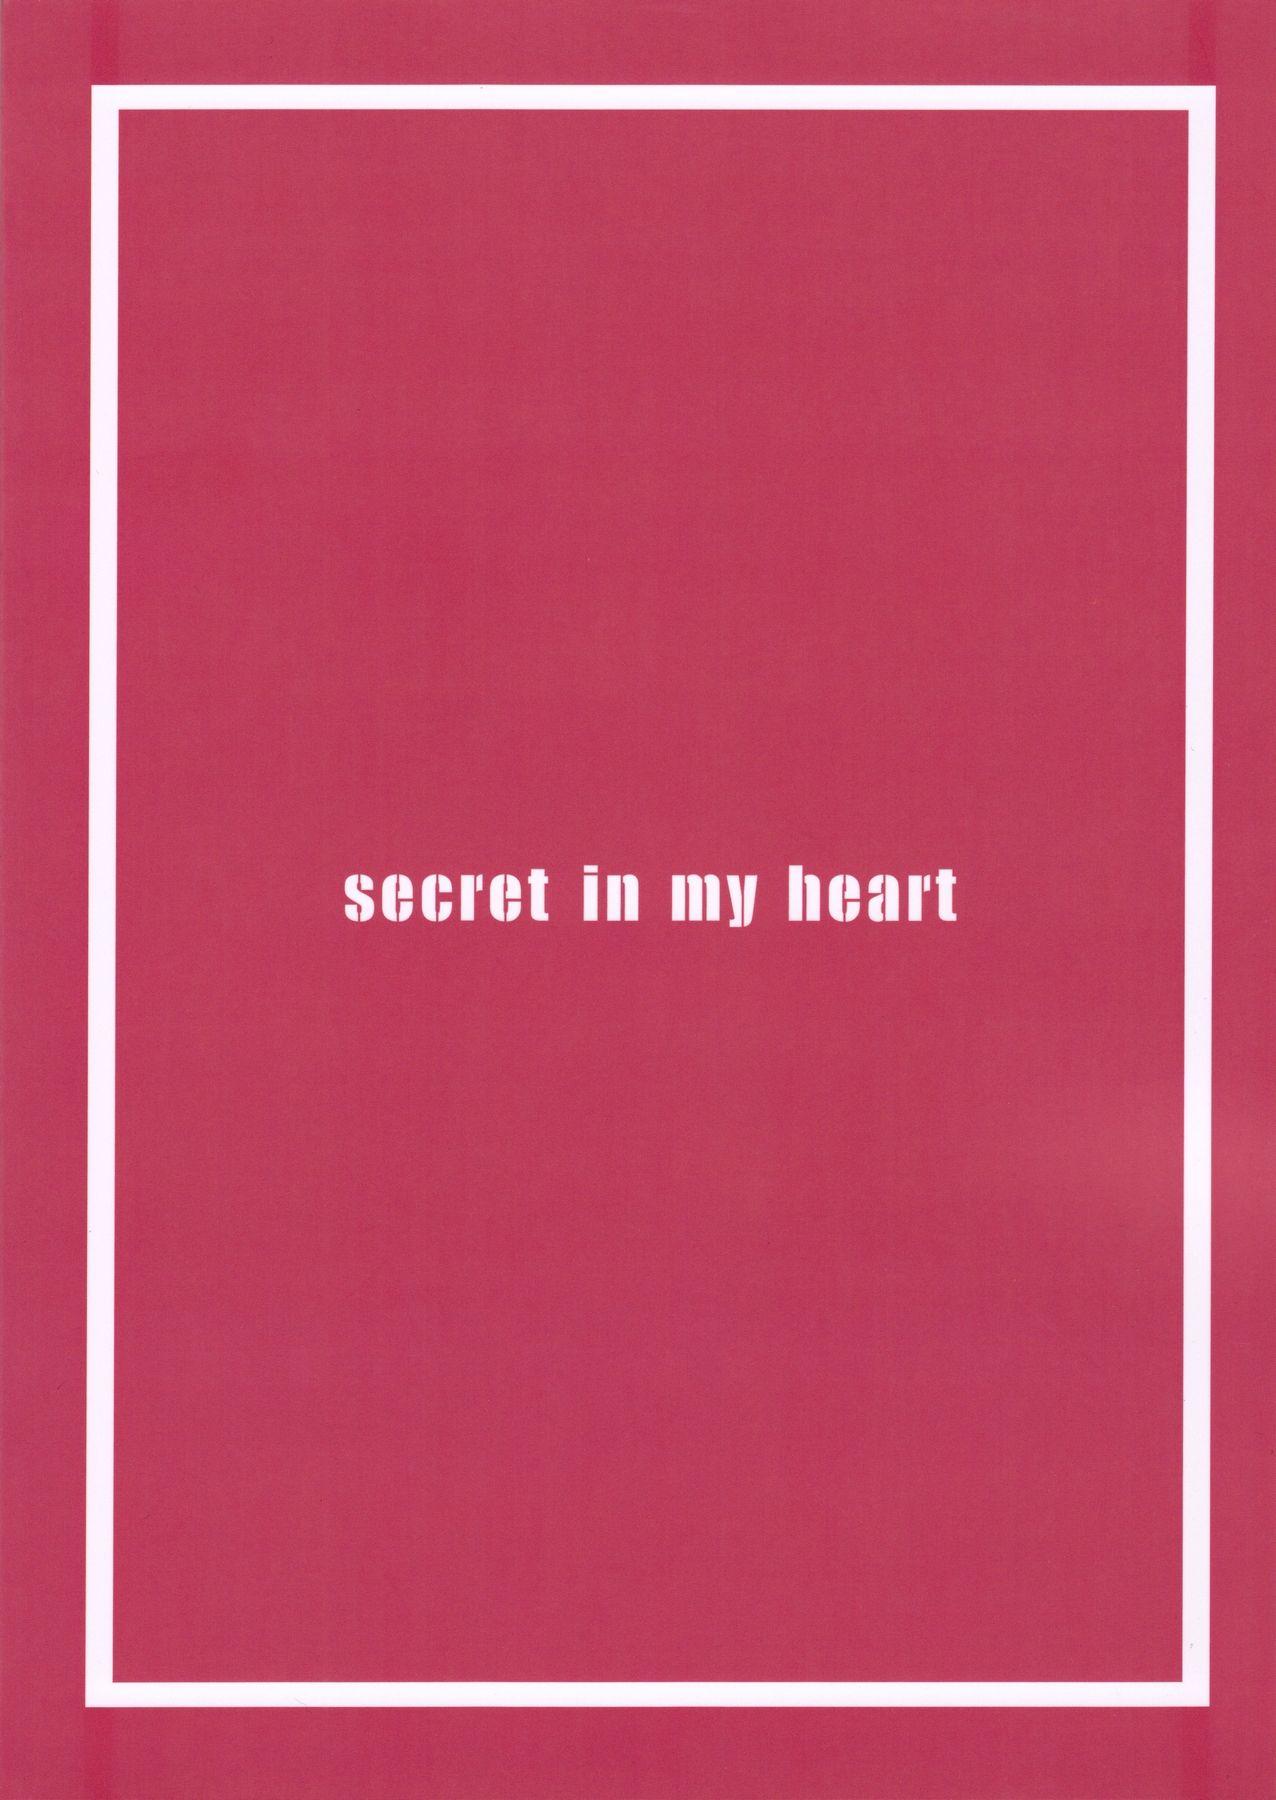 secret in my heart 20